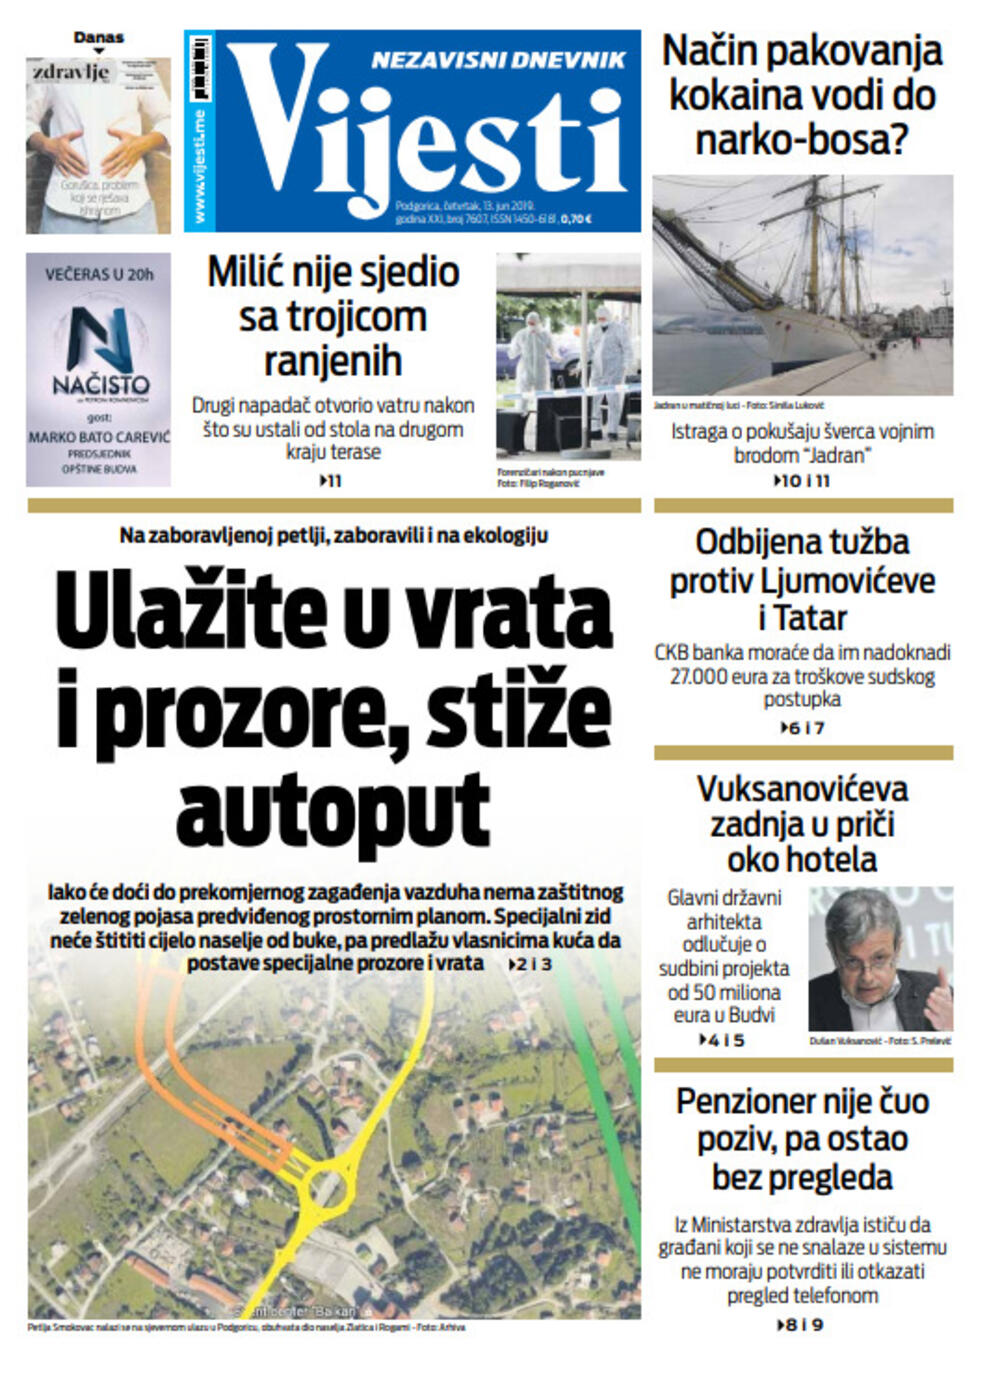 Naslovna strana "Vijesti" za 13. jun, Foto: Vijesti